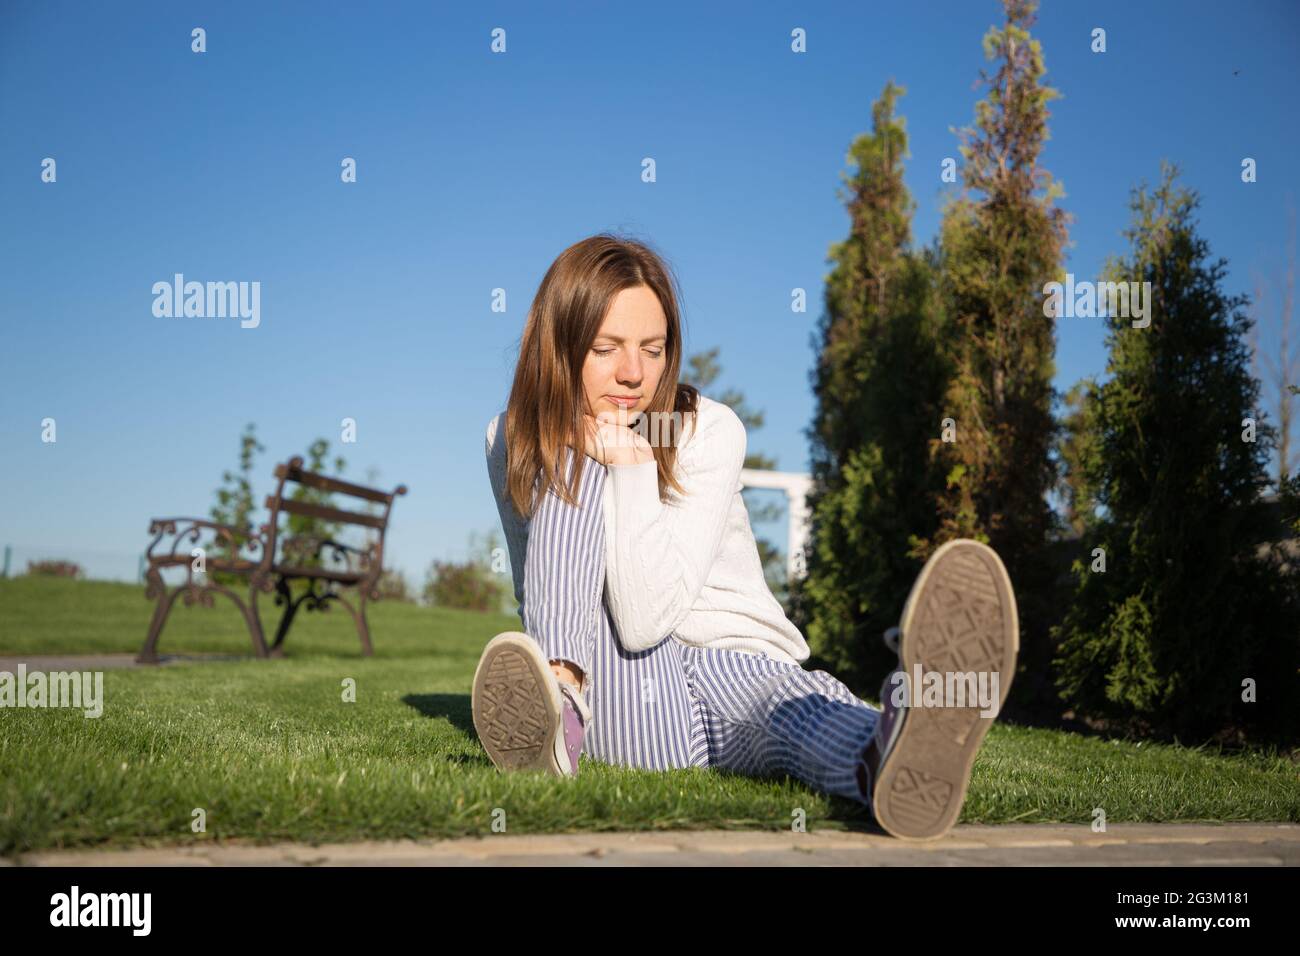 Une femme européenne de 30-40 ans est assise sur une pelouse verte dans un parc par une journée ensoleillée. Le visage exprime son inquiétude, la confusion, la réflexion sur les plans, s Banque D'Images